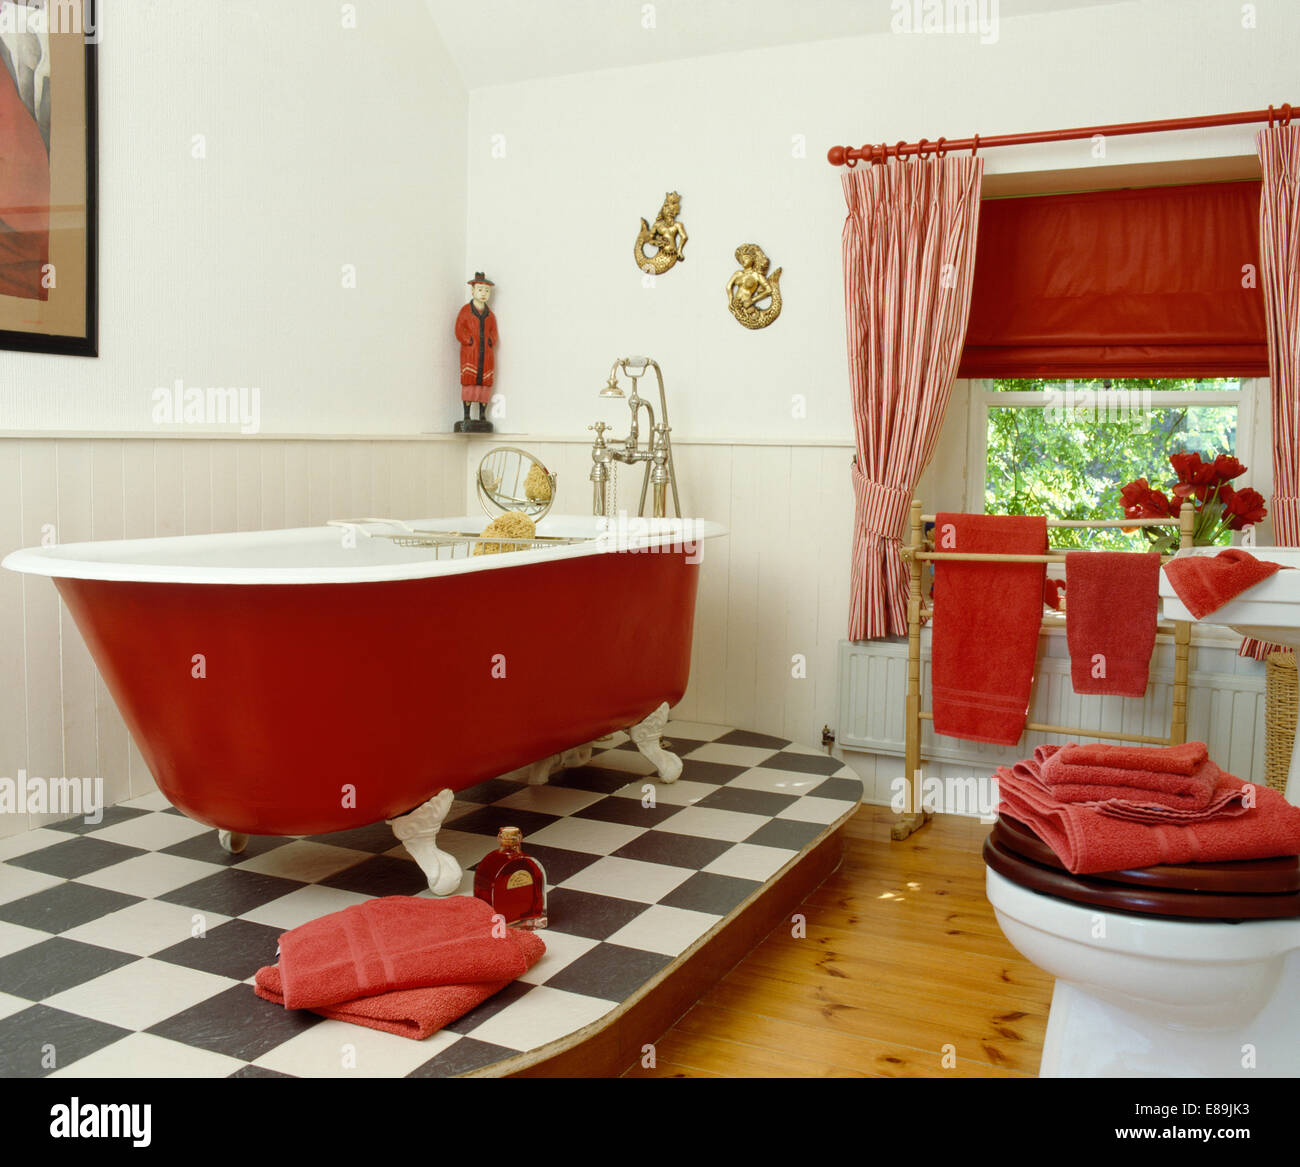 Roten Rolltop Bad auf erhöhten schwarz + weißes Vinylfußboden im Bad mit roten blind und gestreiften Vorhänge am Fenster Stockfoto